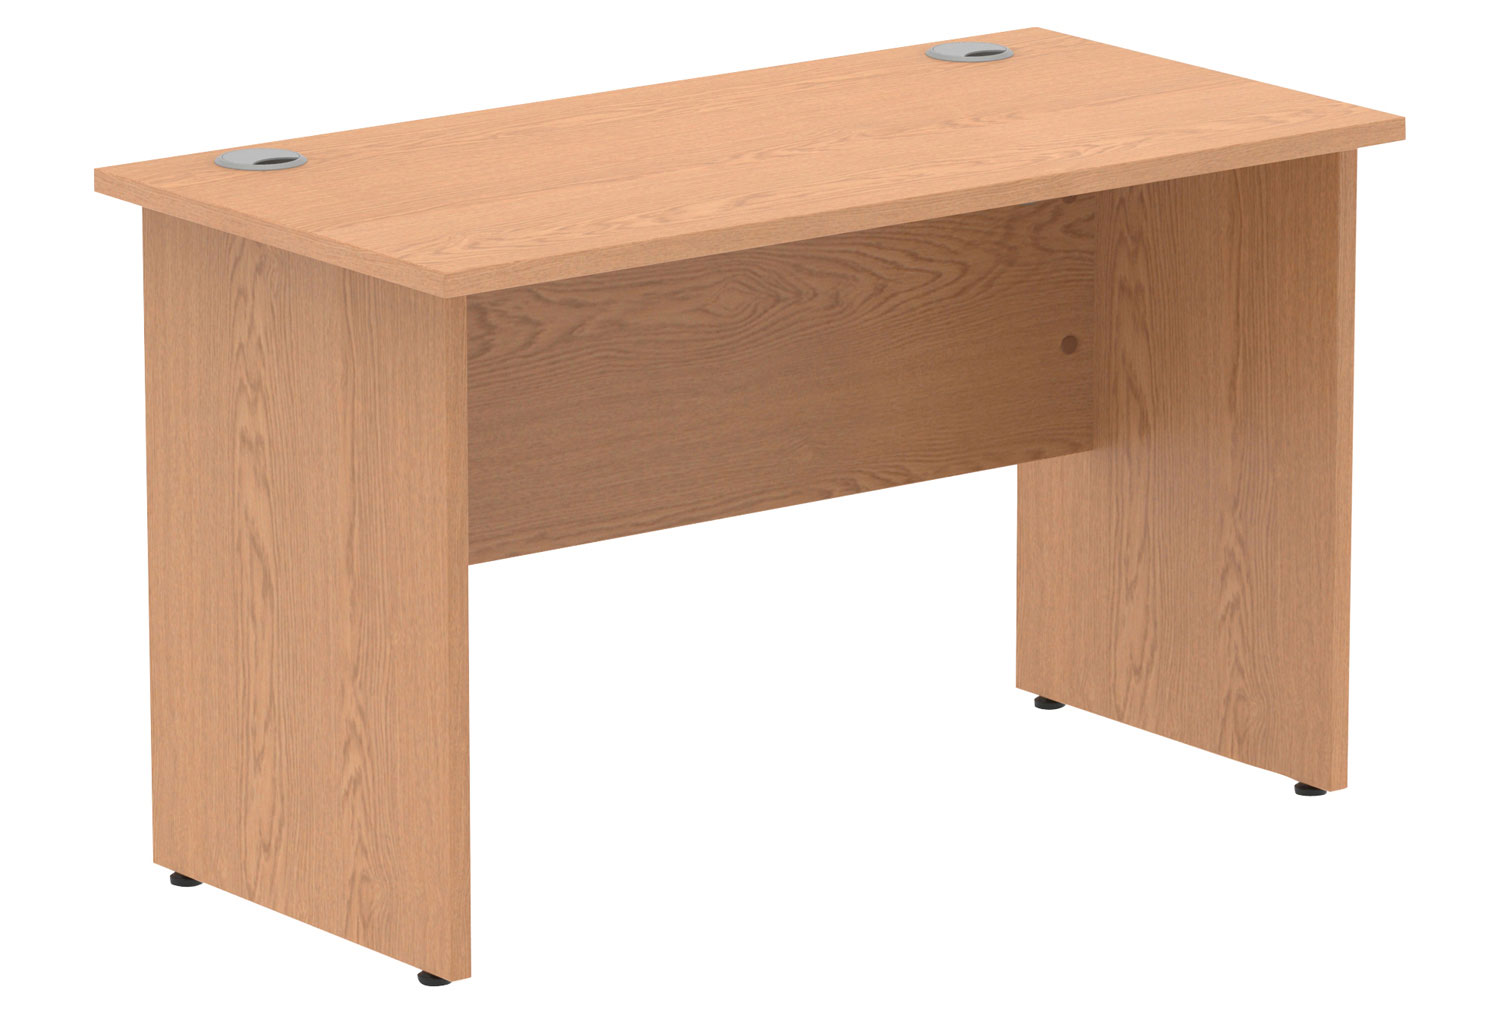 Vitali Panel End Narrow Rectangular Office Desk, 120w60dx73h (cm), Oak